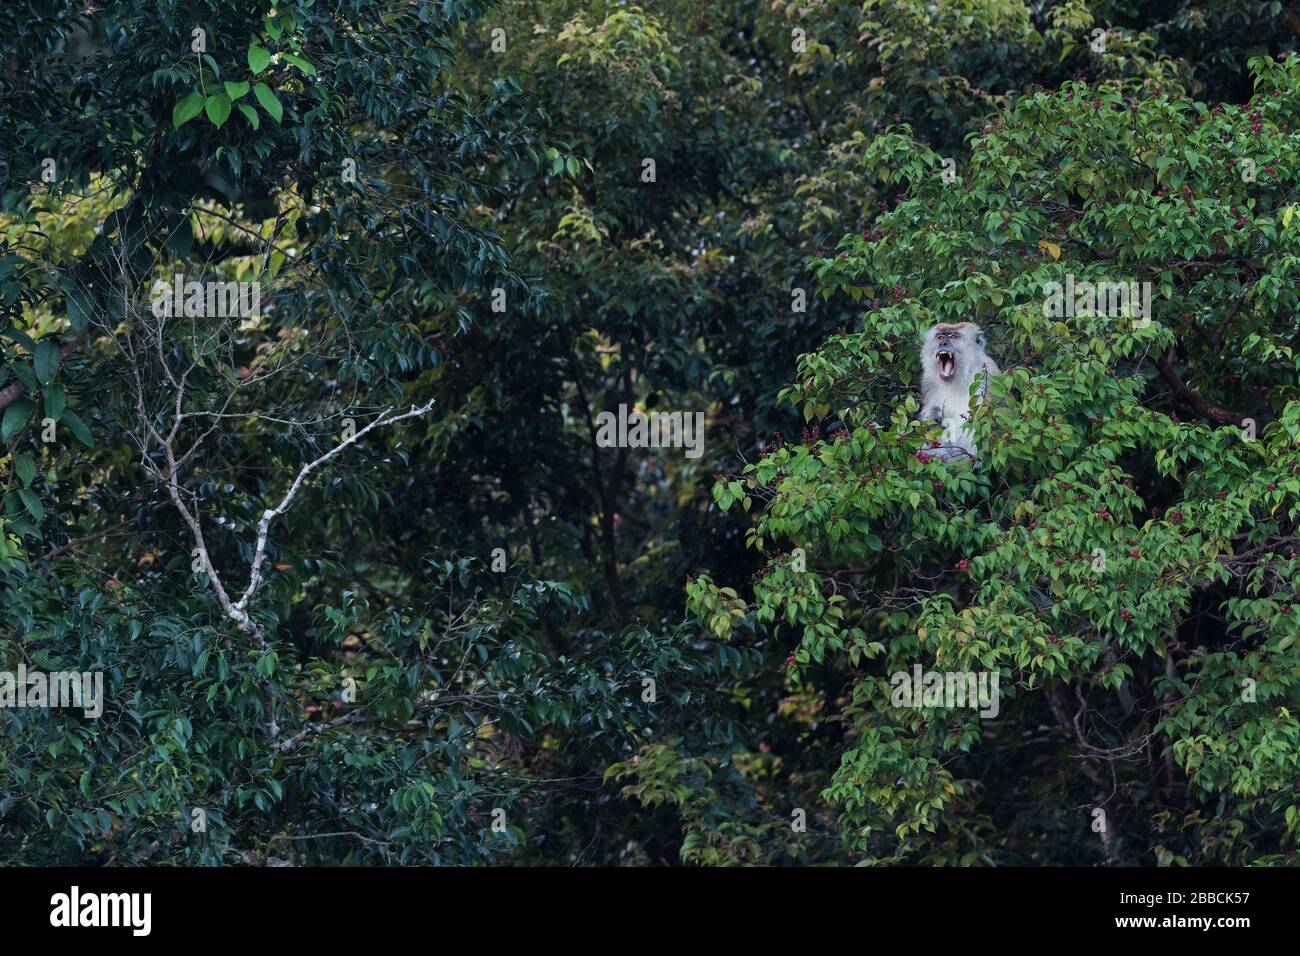 Langschwänziger Makaque - Macaca fascicularis, gewöhnlicher Affe aus südostasiatischen Wäldern, Waldgebieten und Gärten, Pangkor Island, Malaysia. Stockfoto